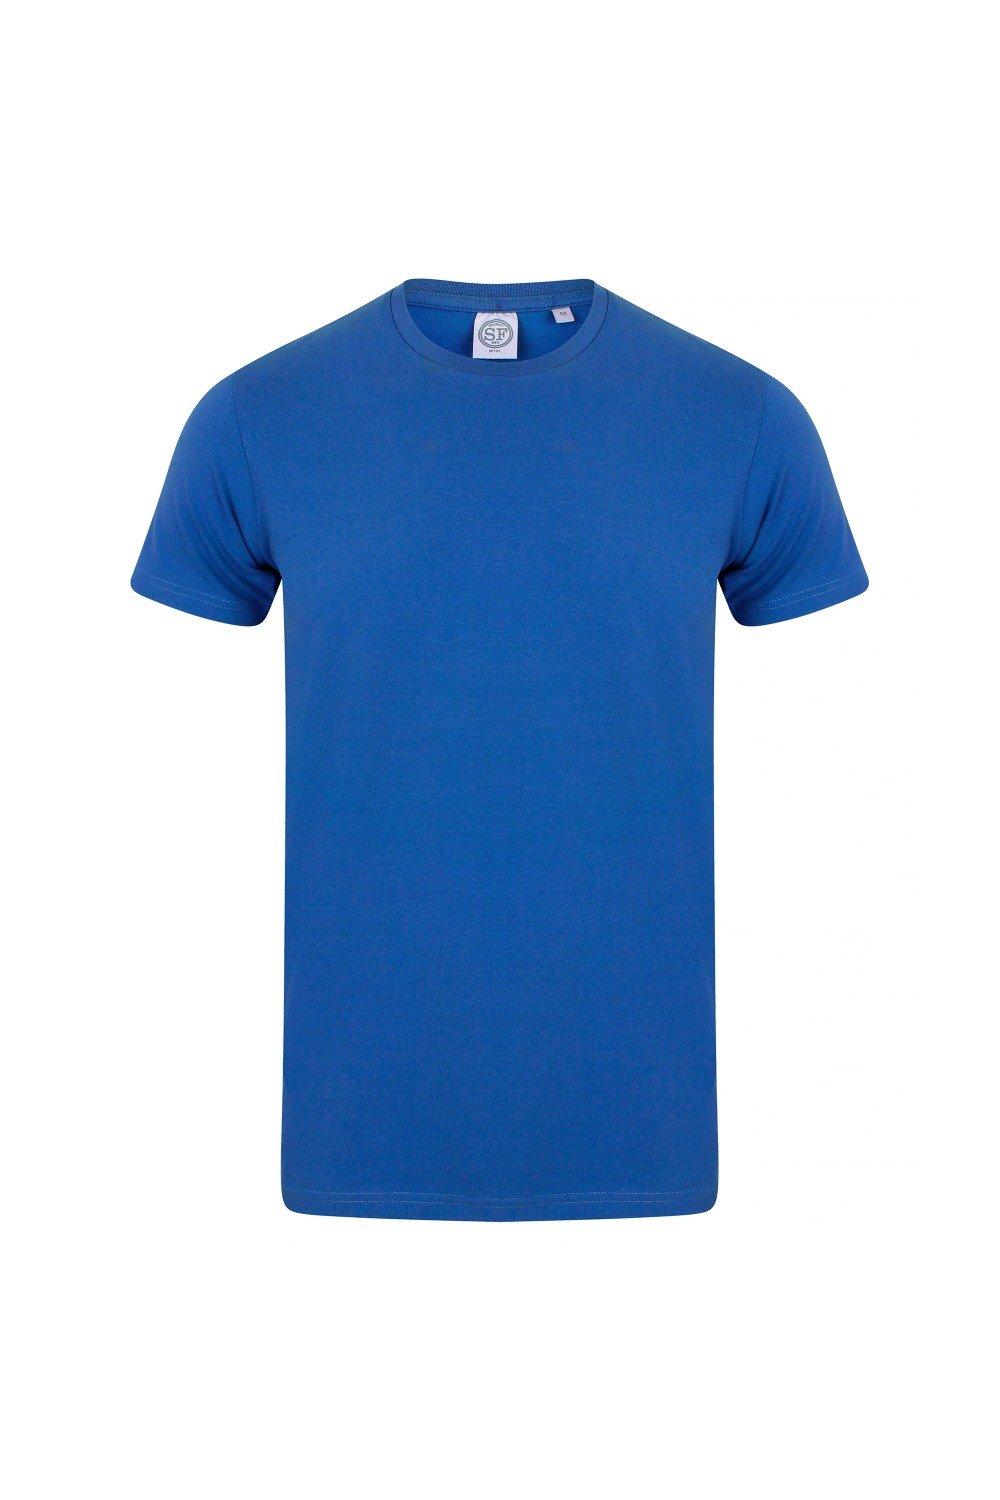 Эластичная футболка SF Minni Feel Good Skinni Fit, синий узкие спортивные брюки skinni minni с манжетами skinni fit черный